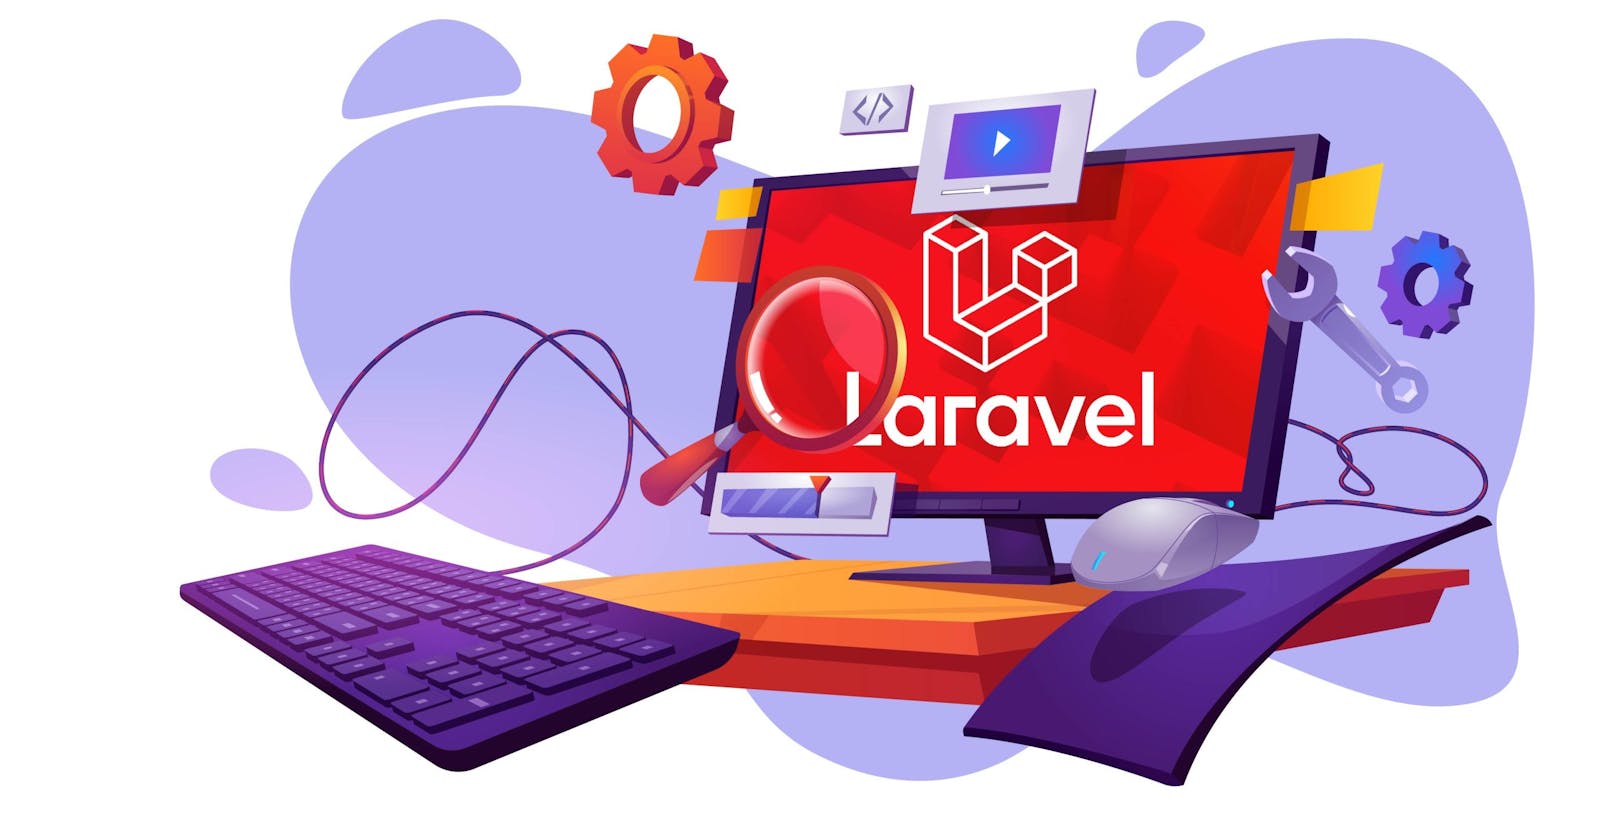 Setting up Laravel Development Environment: Step-by-Step Guide on Installing Laravel